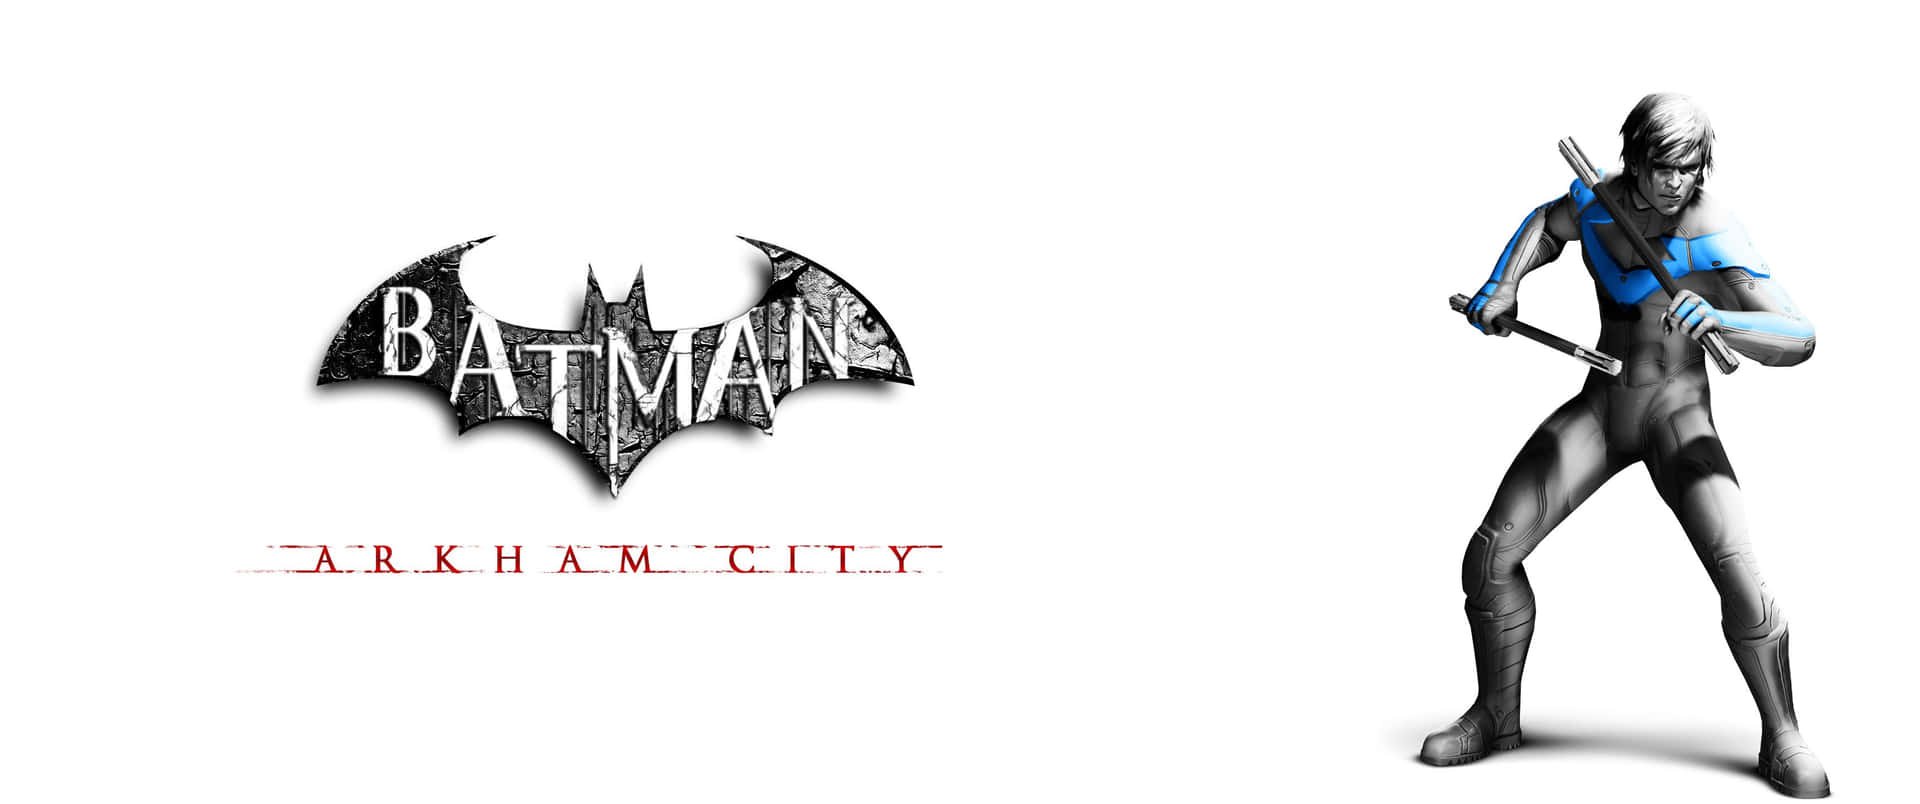 Batmanvilar I Arkham City.